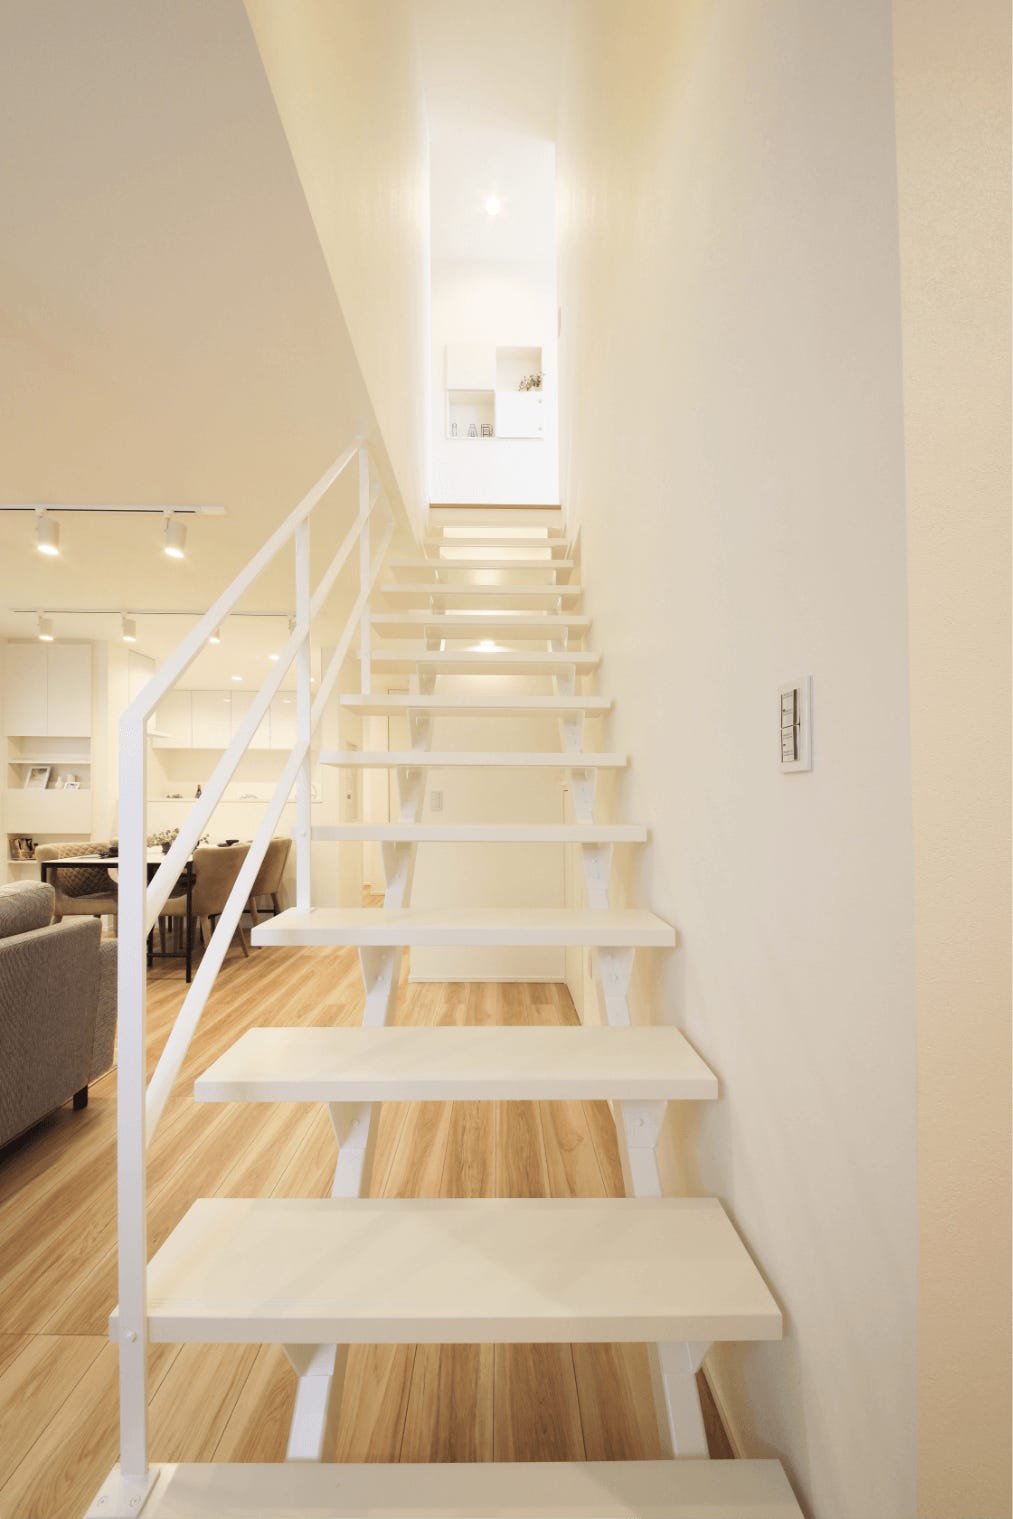 リビング階段をスケルトン階段にすることで、
家族の円滑なコミュニケーションや開放的な空間が演出されます。